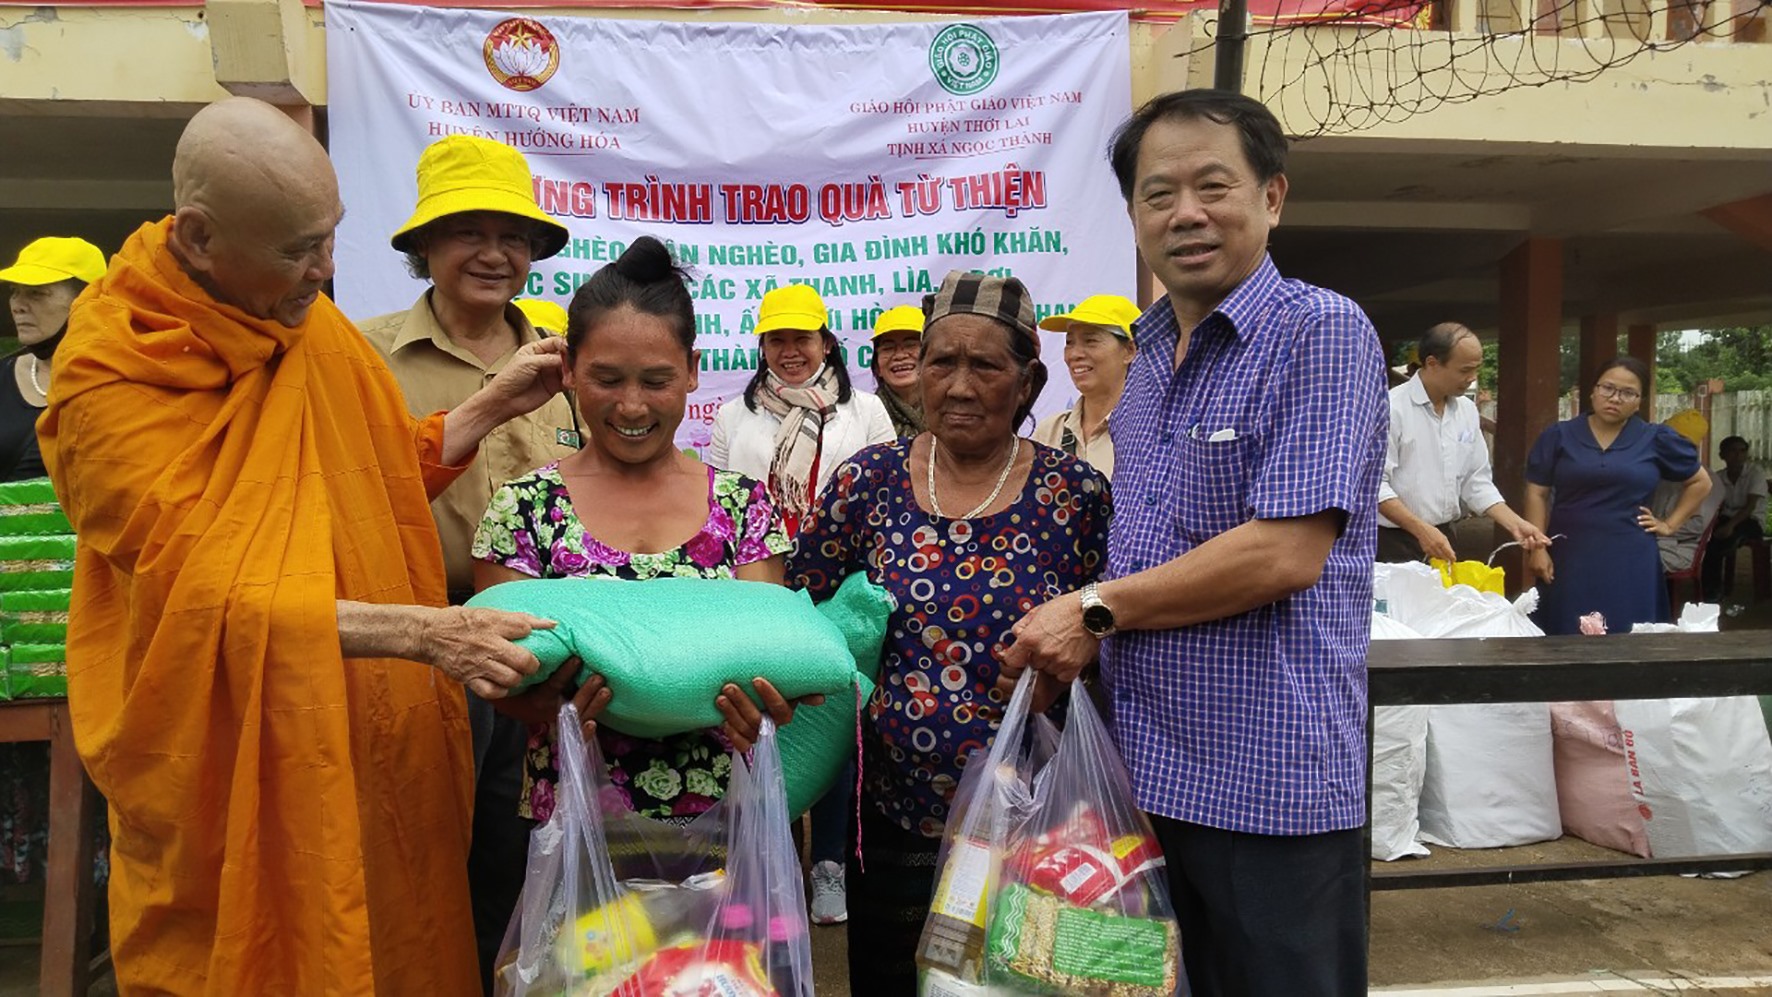 Trao tặng 200 suất quà cho người dân có hoàn cảnh khó khăn ở các xã Thanh, Lìa và A Dơi - Ảnh: BL